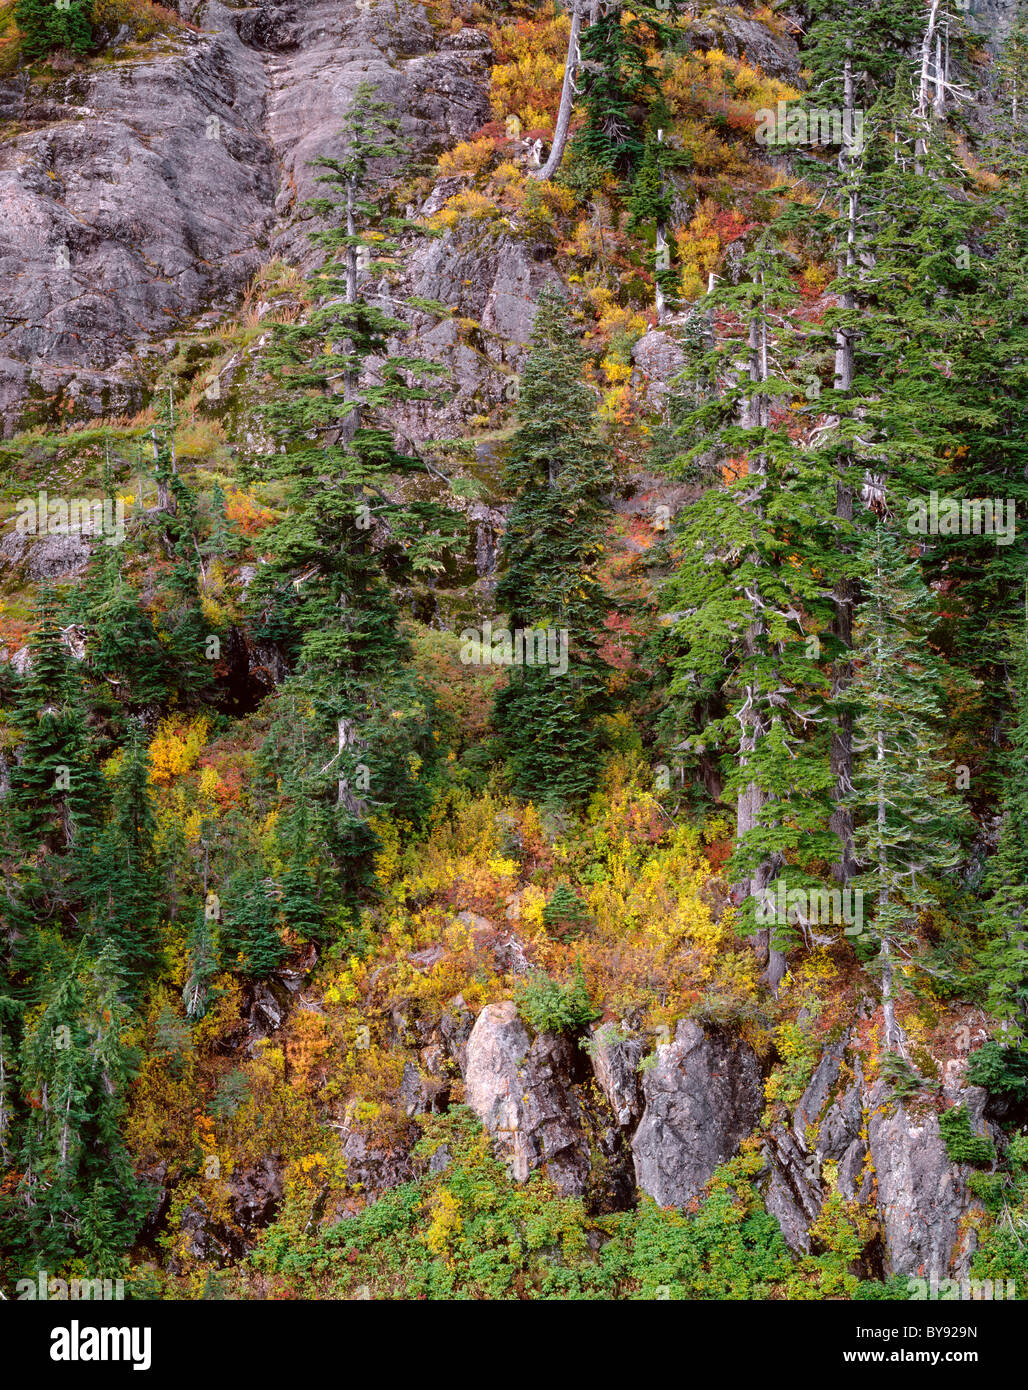 Les conifères s'élever au-dessus du sous-bois aux couleurs de l'automne sur le côté de Mt. Herman, Mt. Baker - Snoqualmie National Forest, North Carolina, USA Banque D'Images